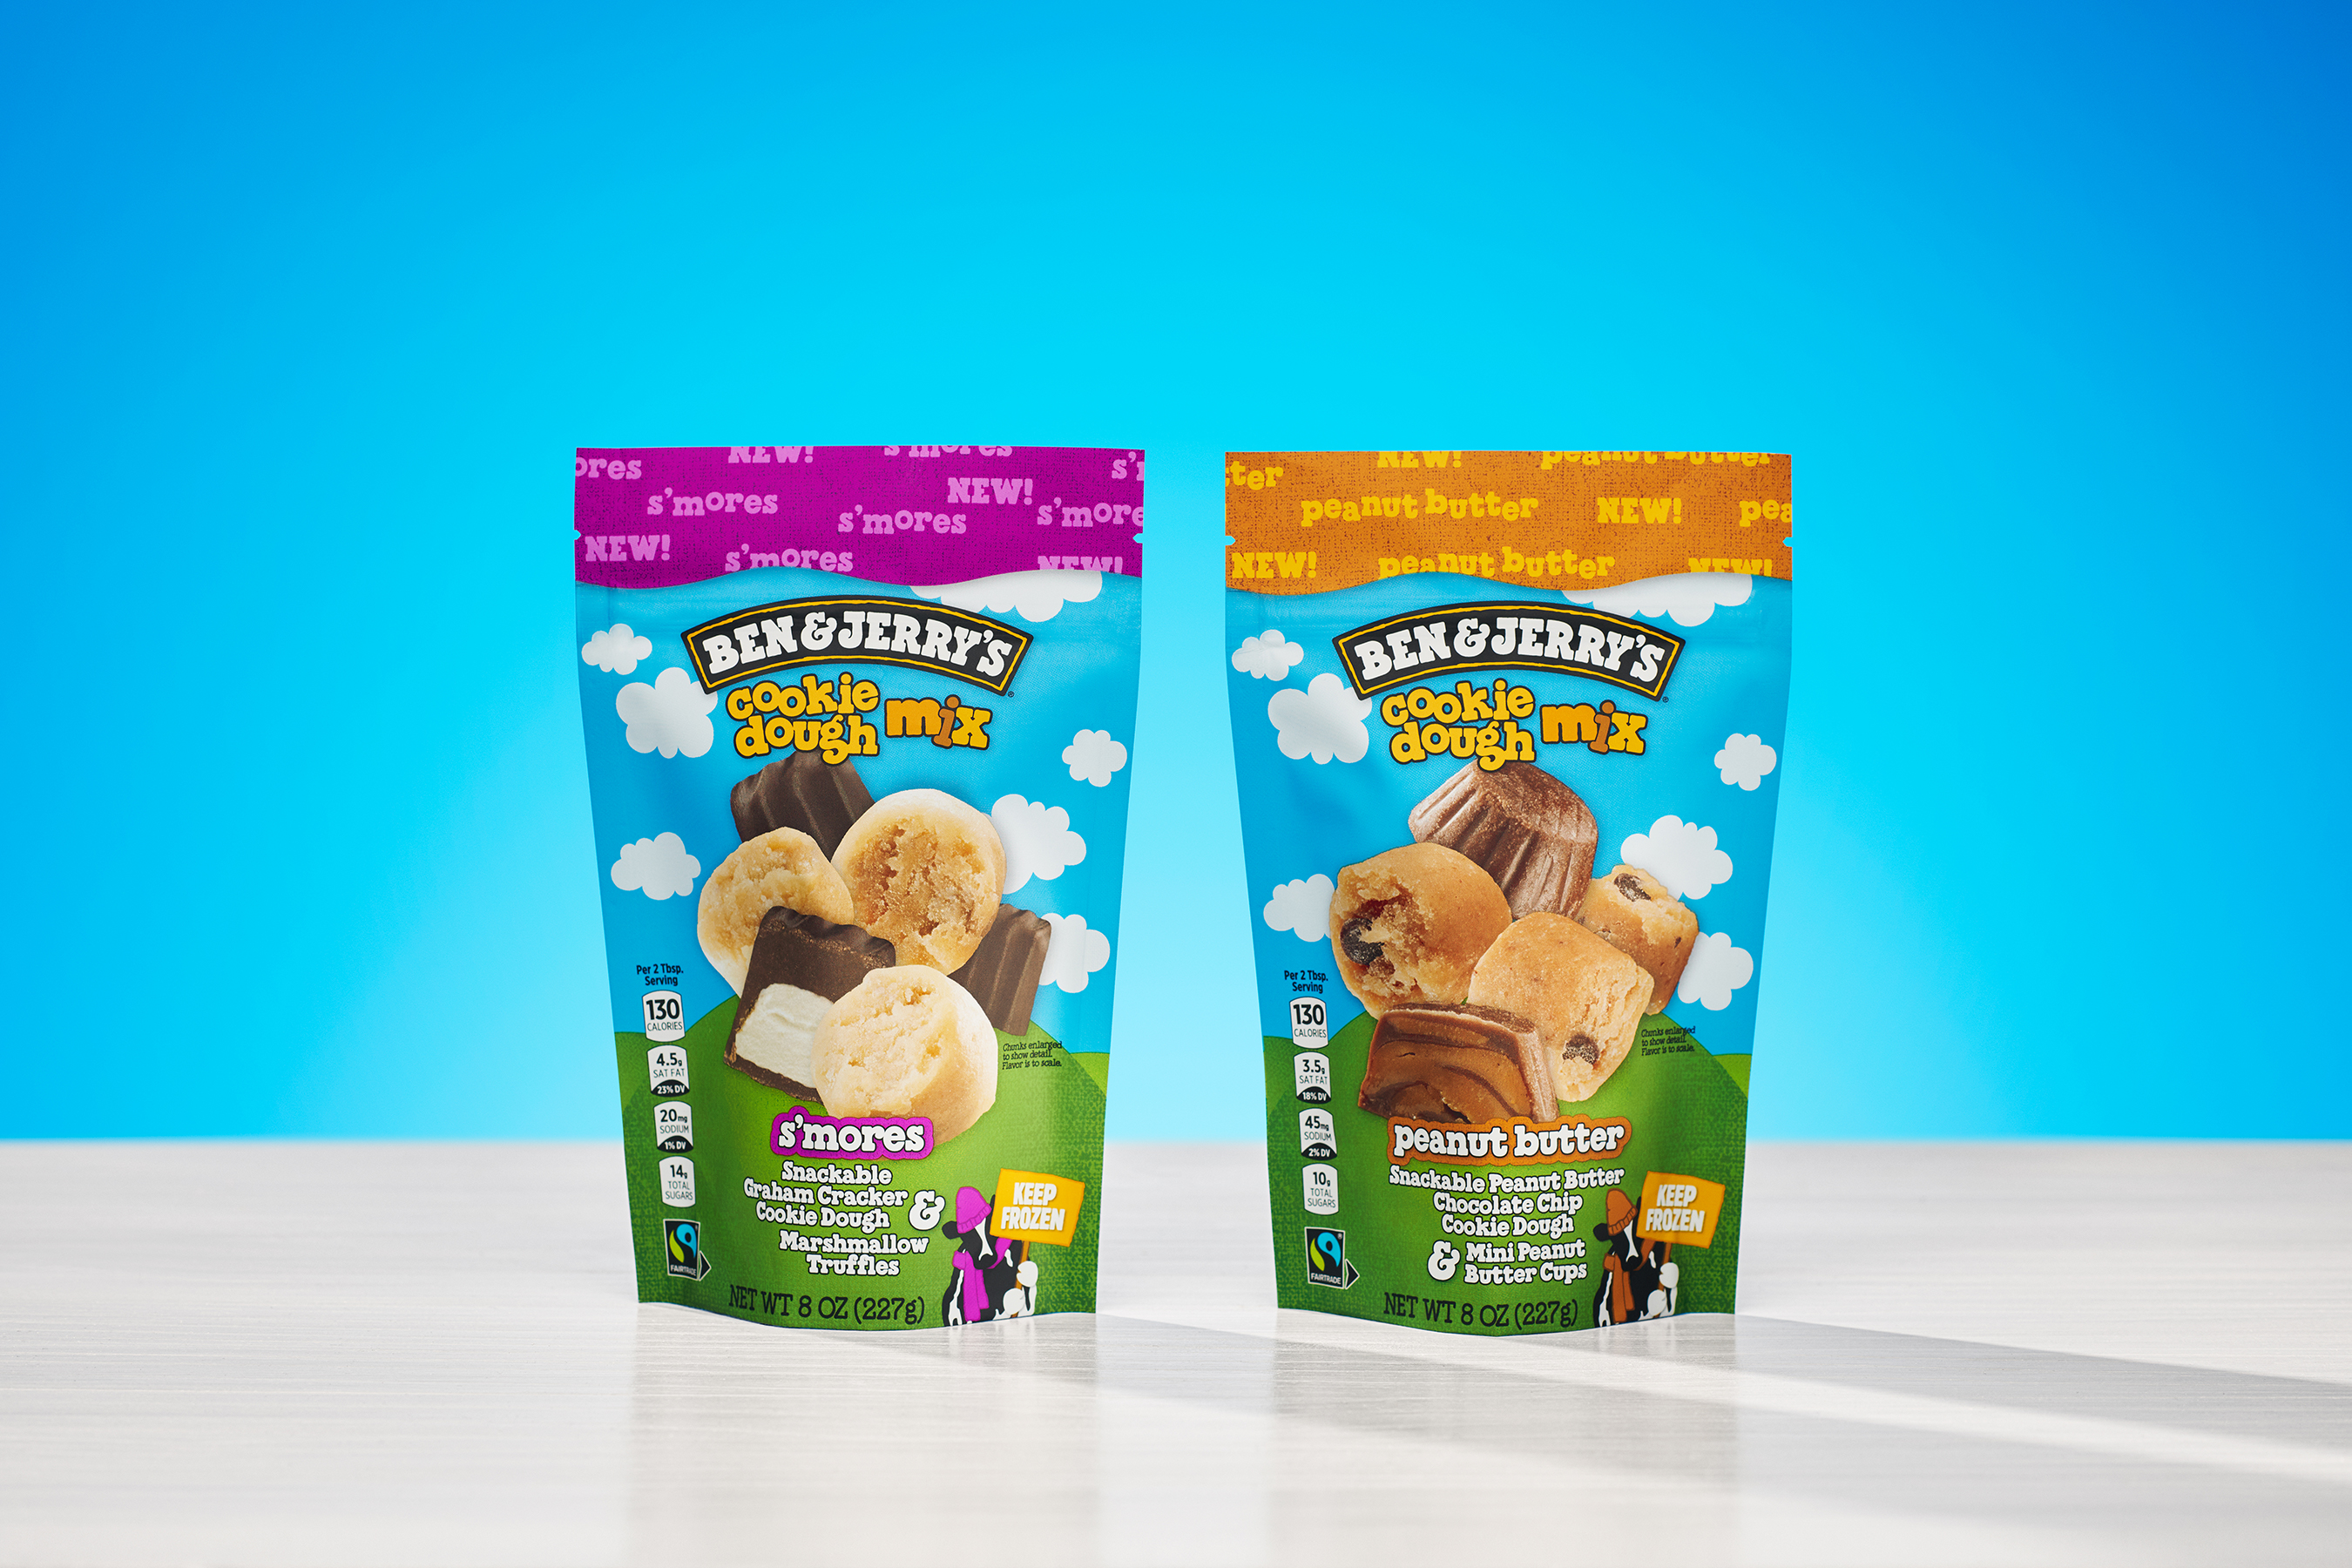 Ben & Jerrys newest Cookie Dough Mix flavors are unveiled featuring cookie dough mixed with candy! Smores or Peanut Butter?